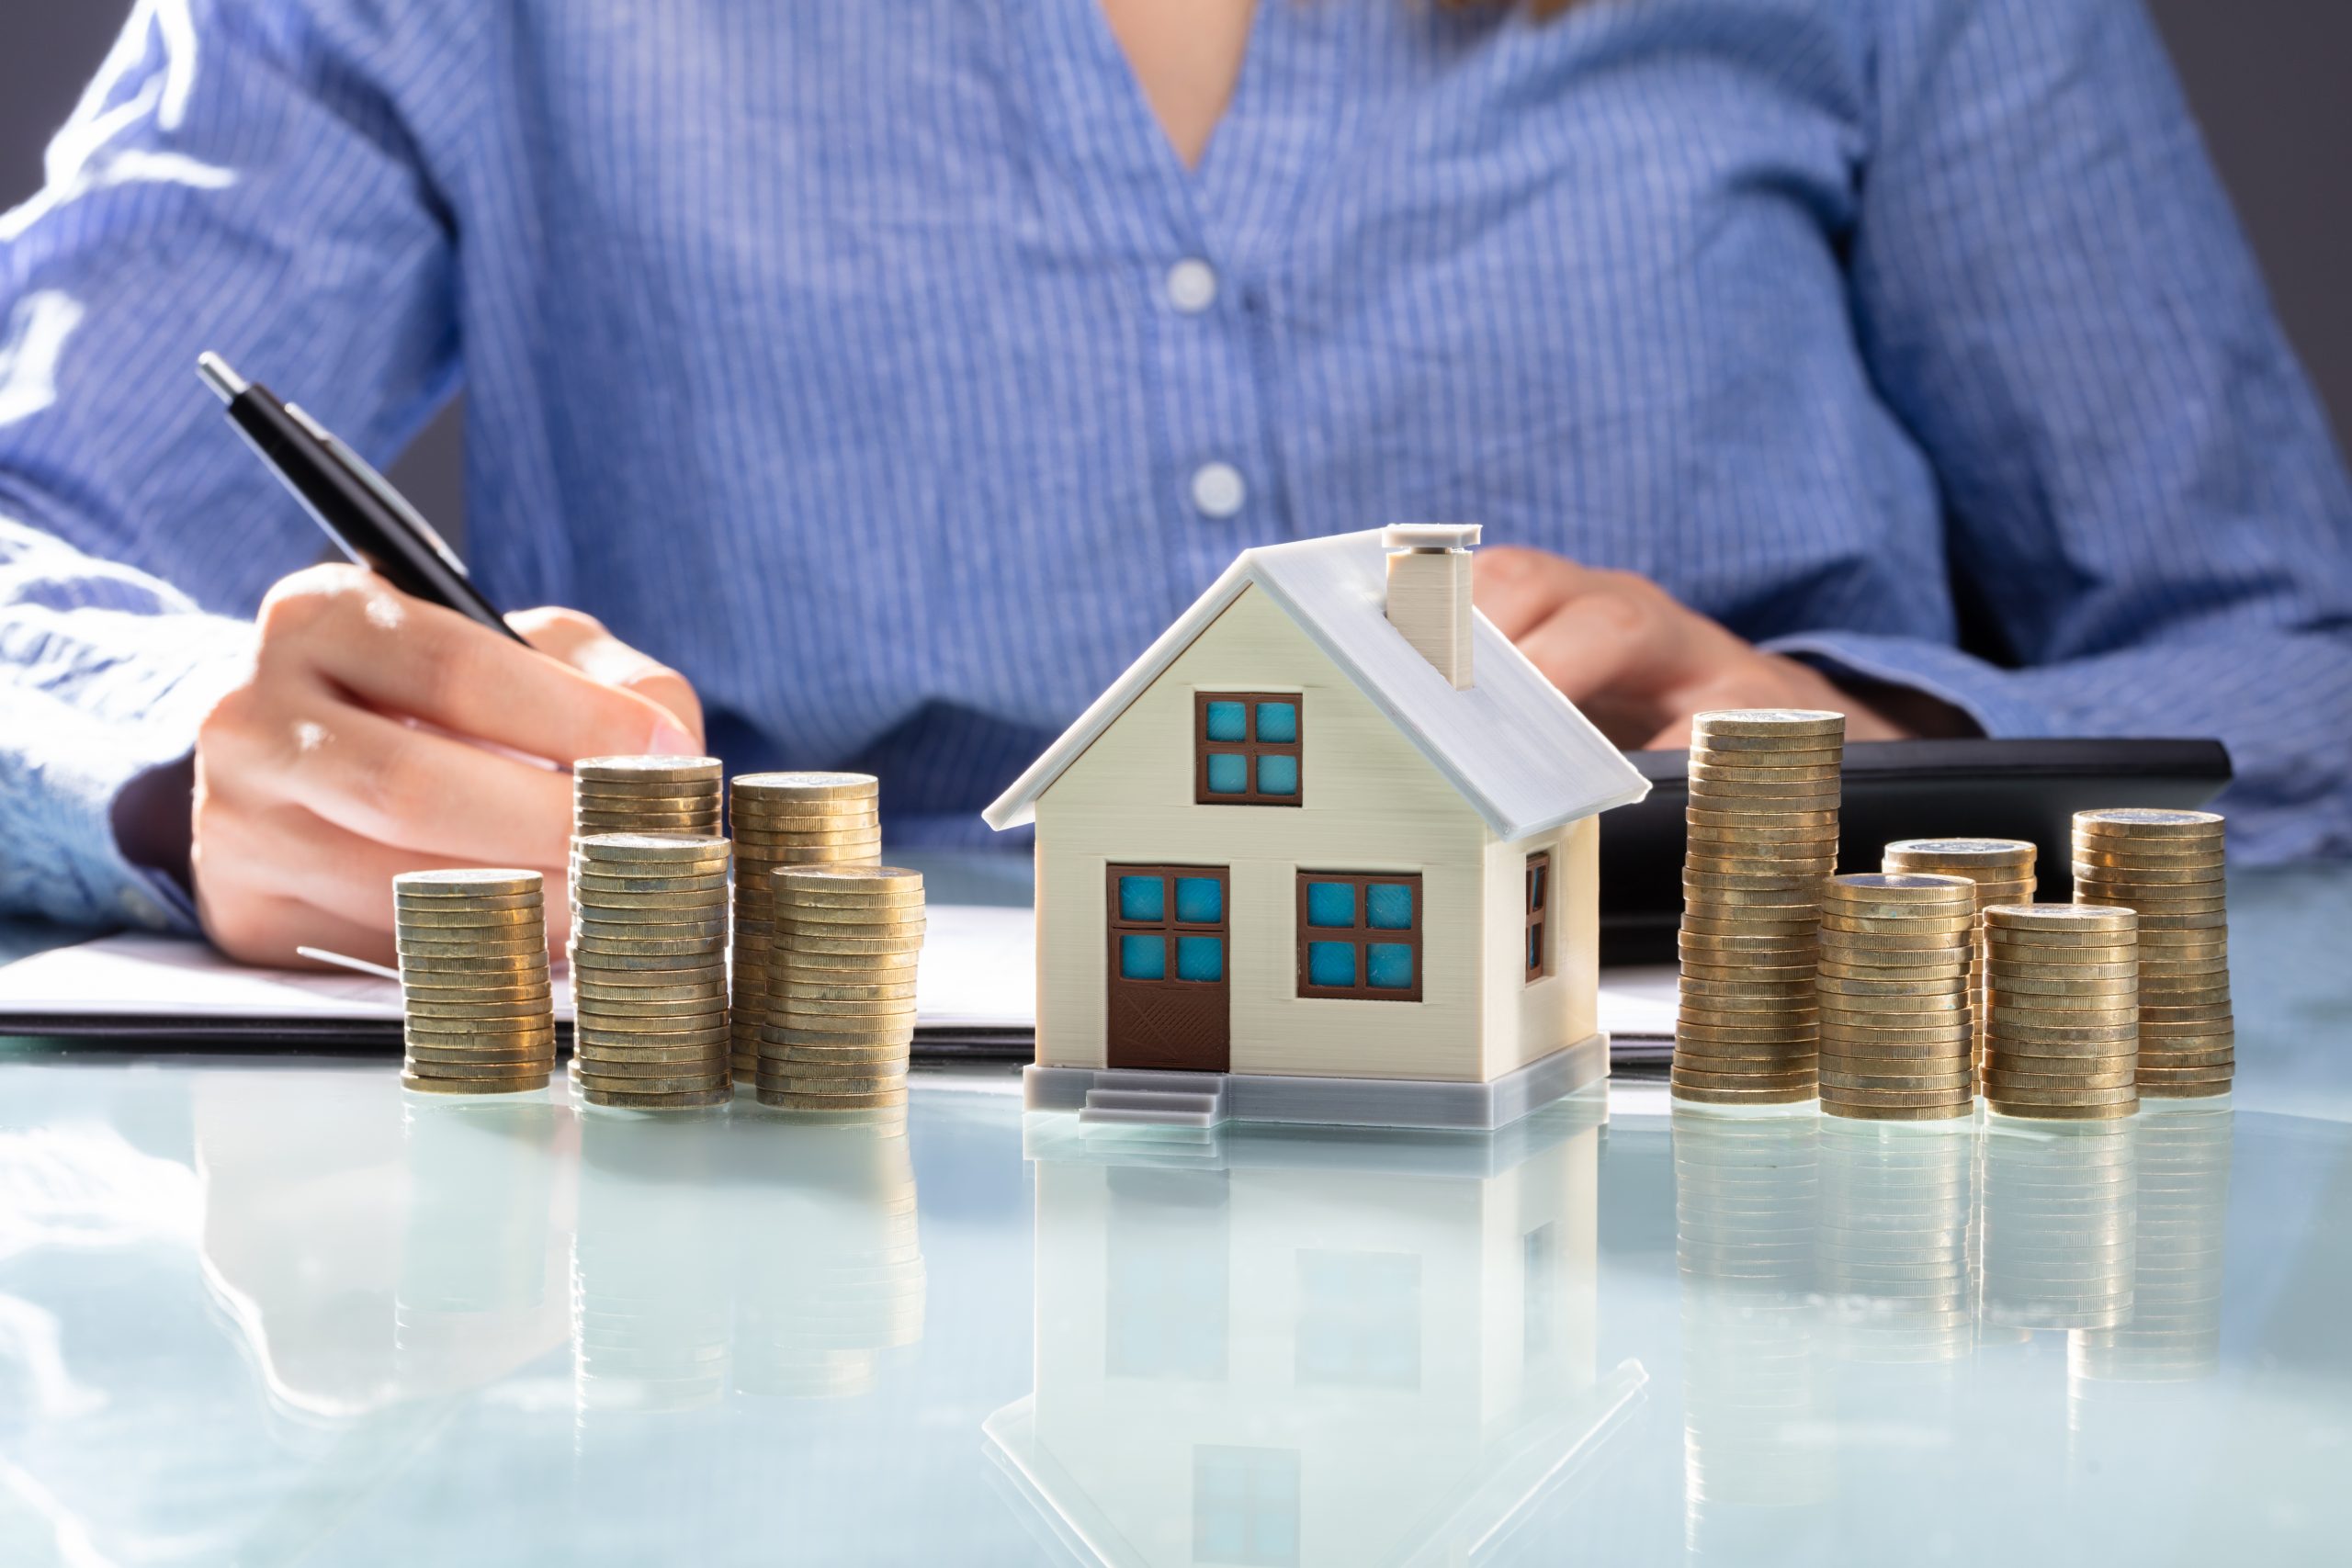 House report. Налог на имущество. Субсидия для дома. Стоимость недвижимости. Финансовая грамотность и недвижимость.